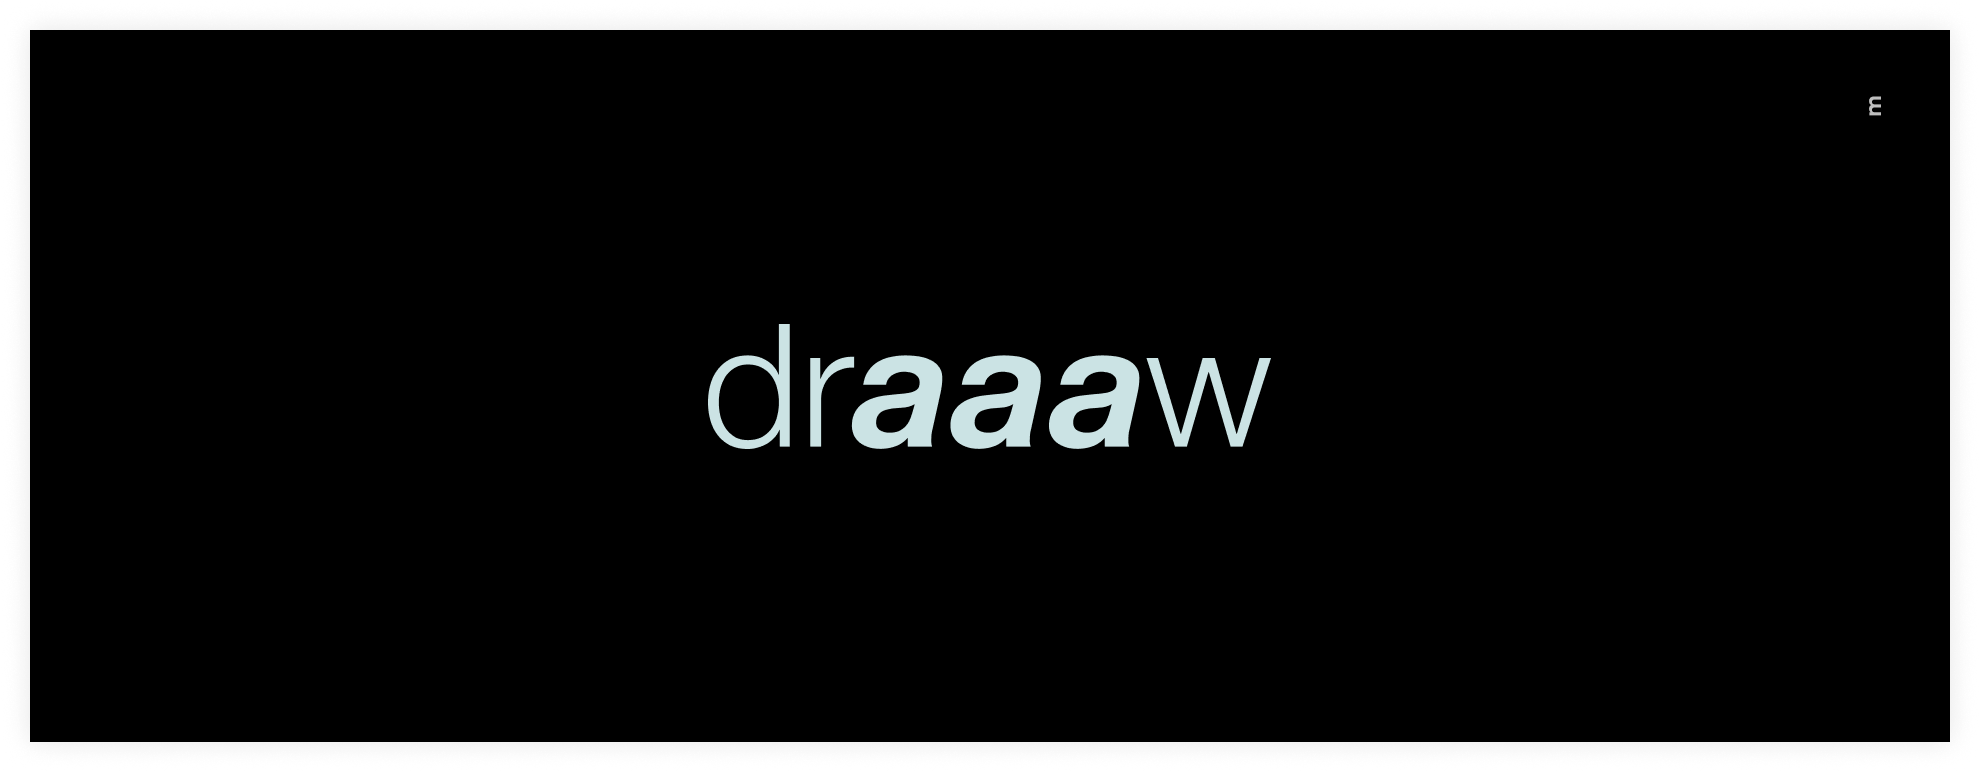 Draaaw7